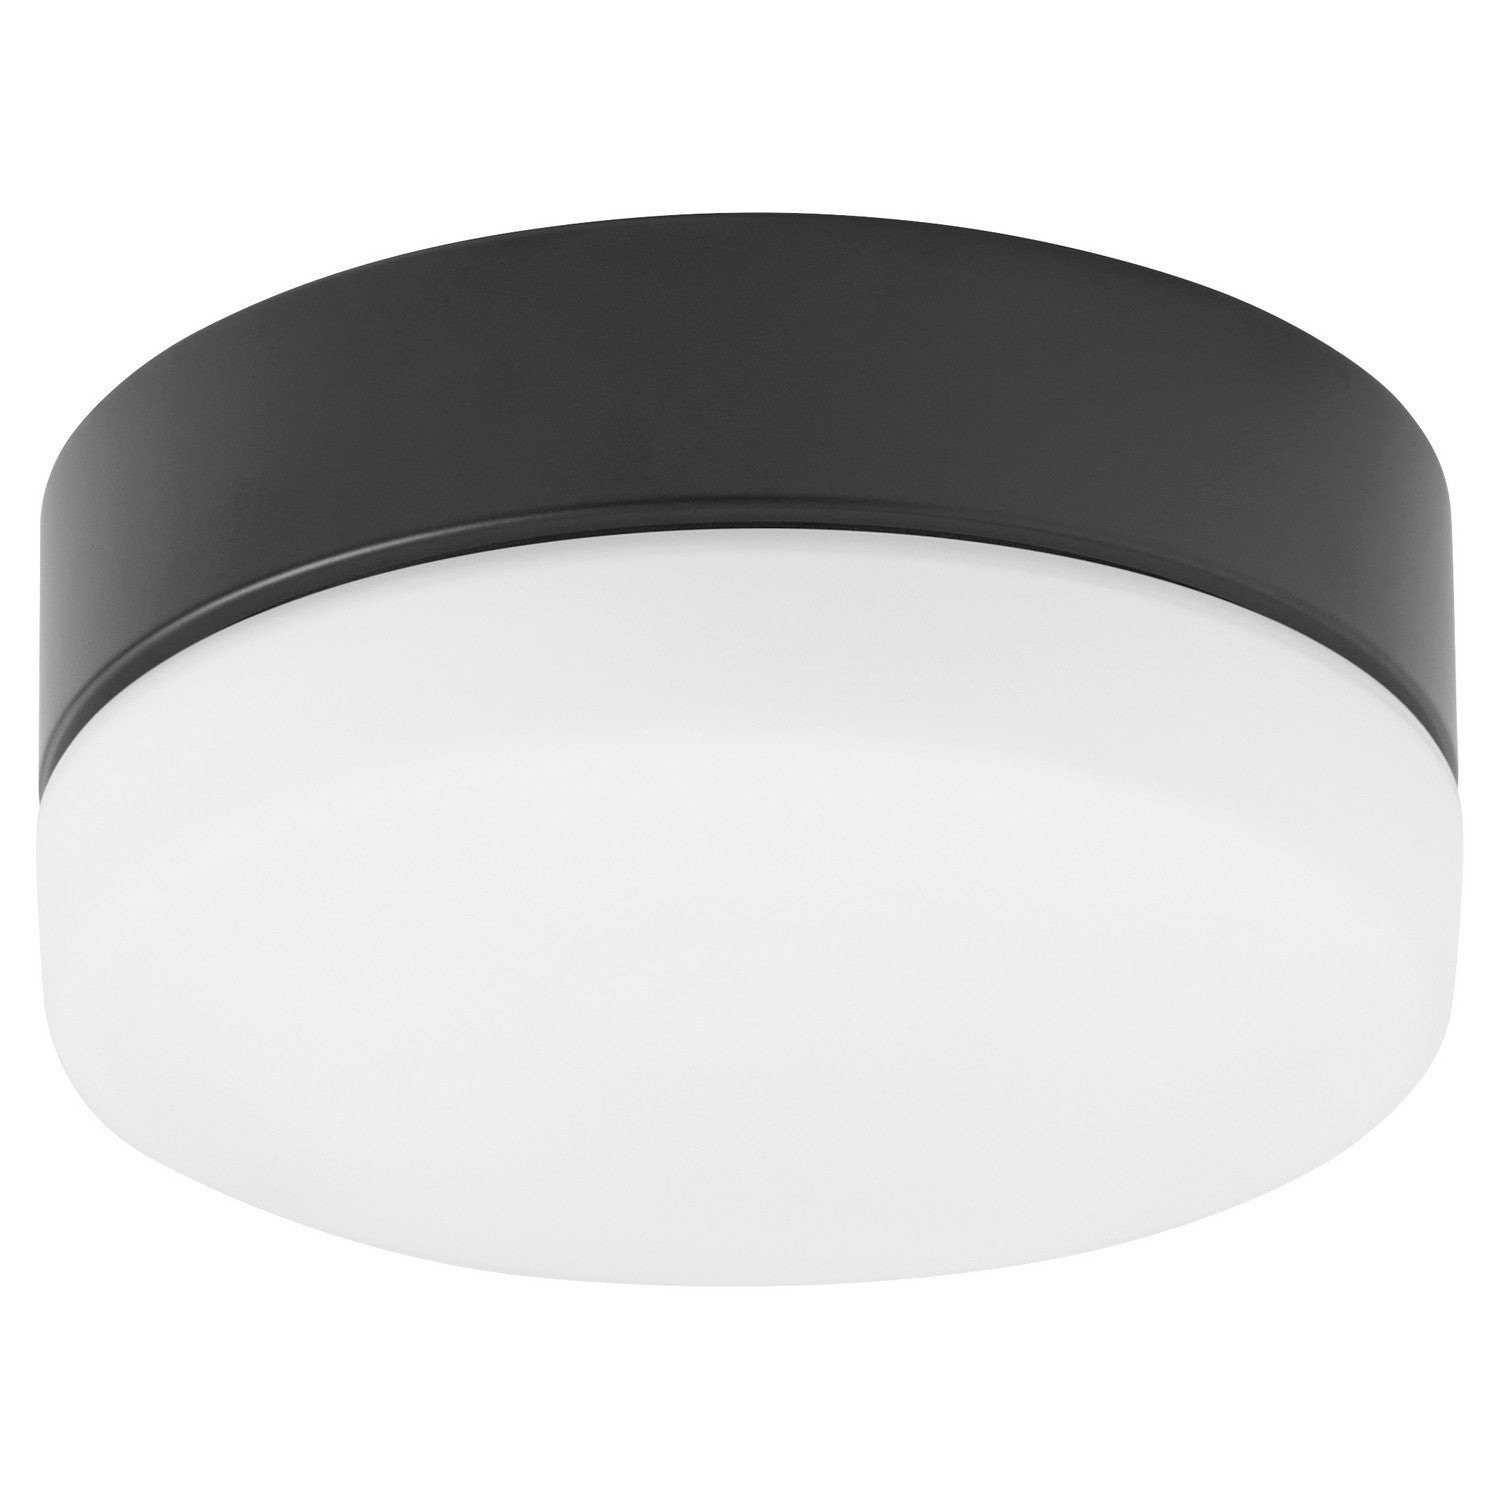 Oxygen - 3-9-119-15 - LED Fan Light Kit - Allegro - Black